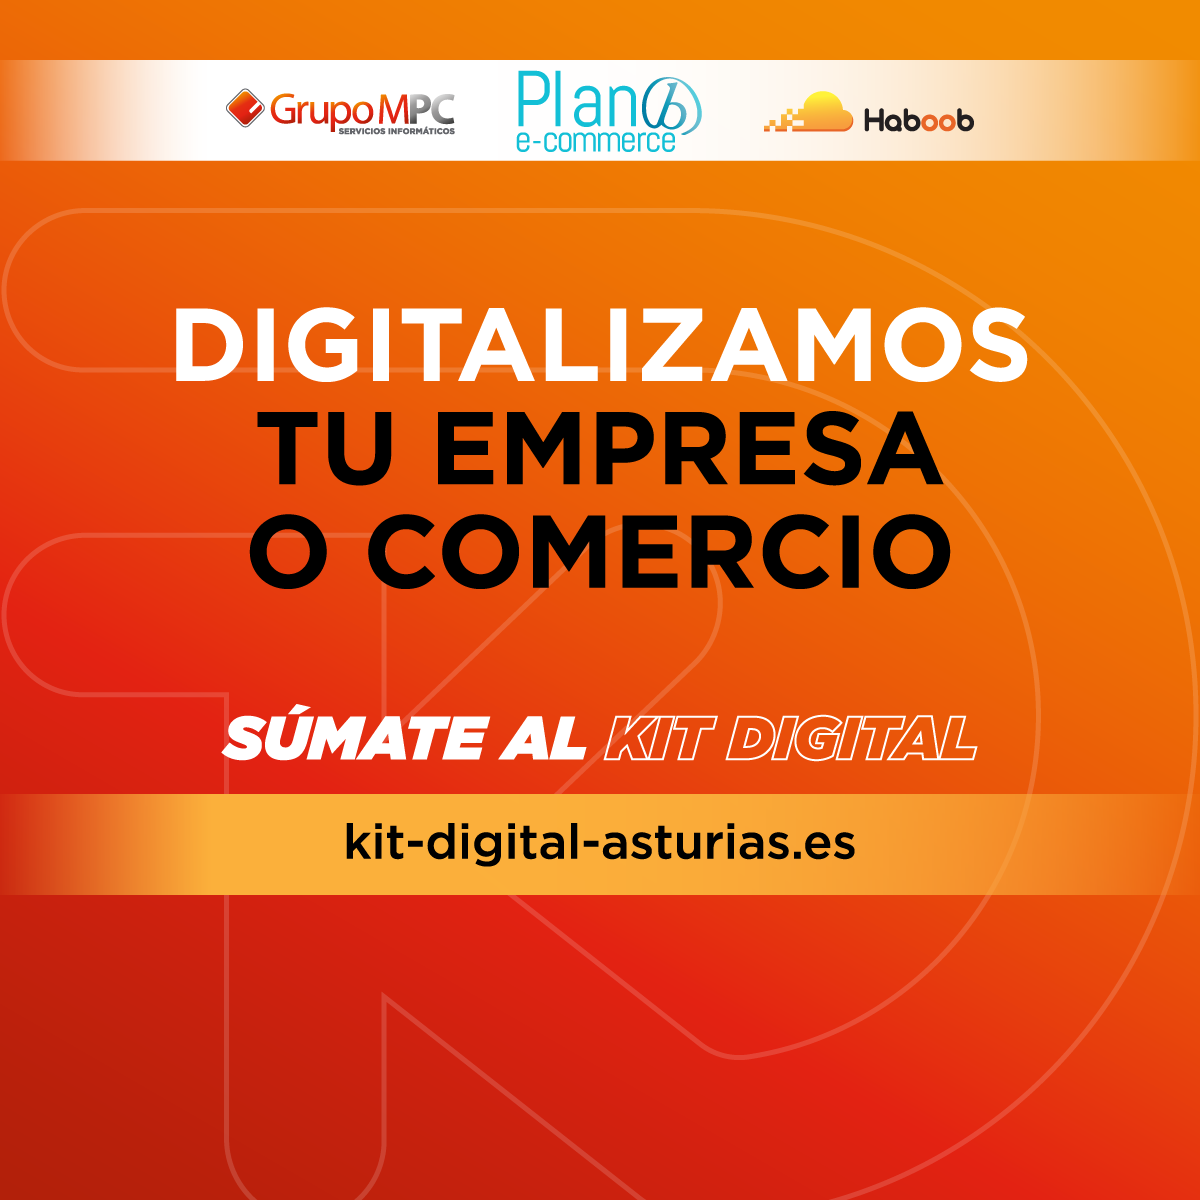 (c) Kit-digital-asturias.es